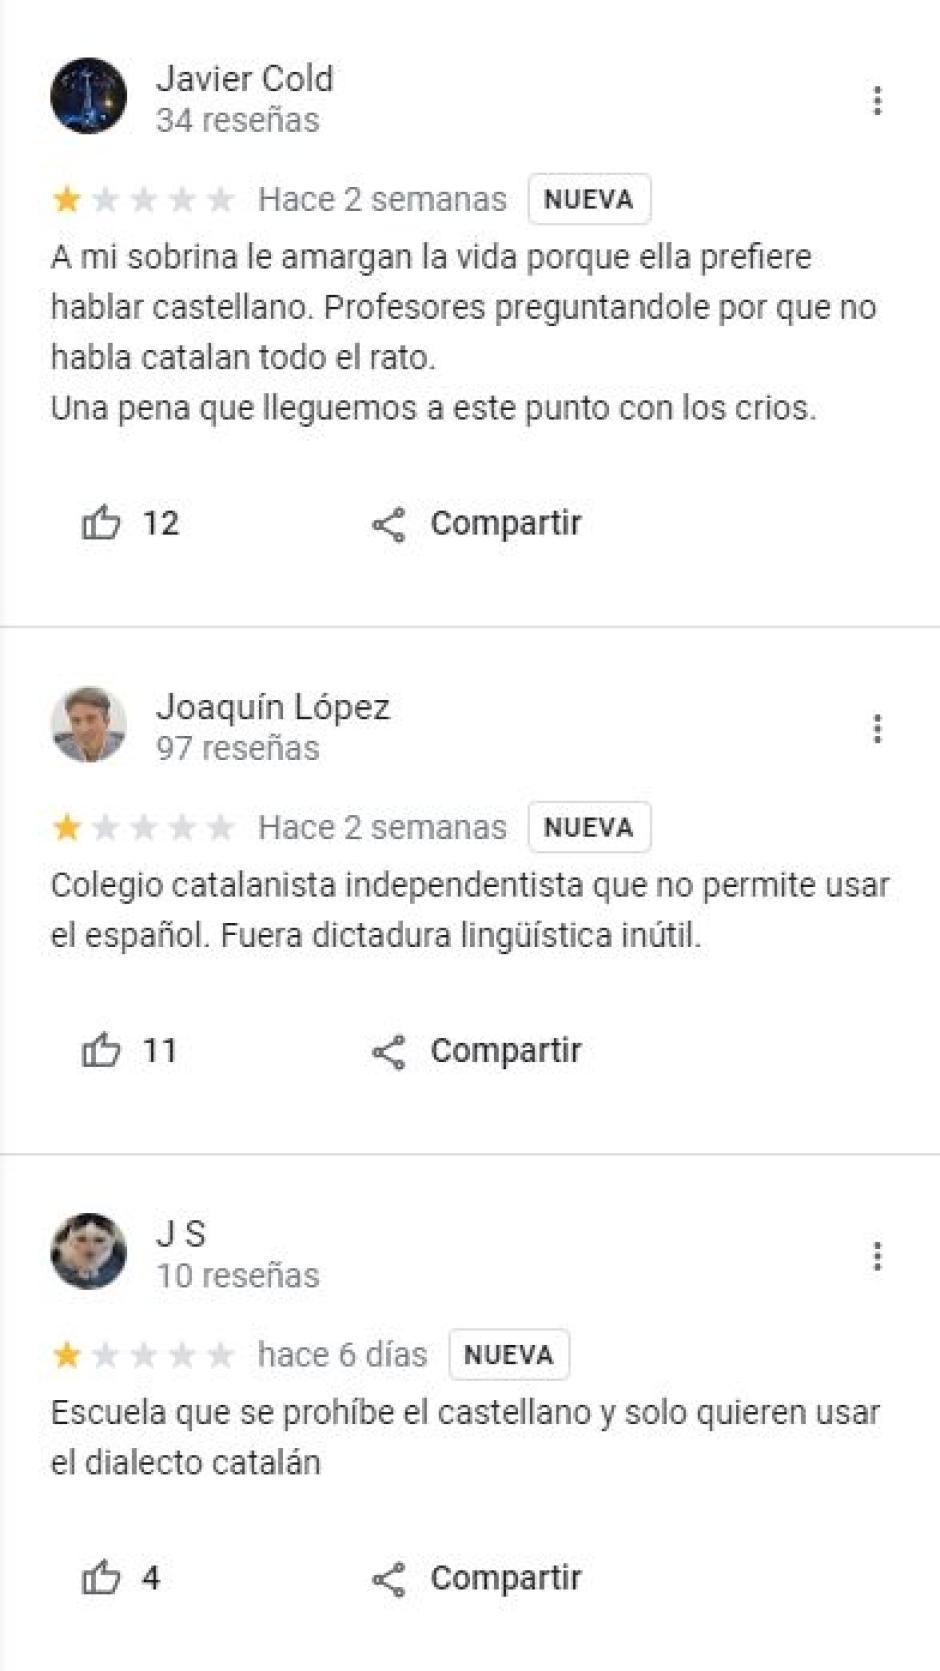 Varias reseñas en Google denunciando lo que ocurre en la Joan Juncadella